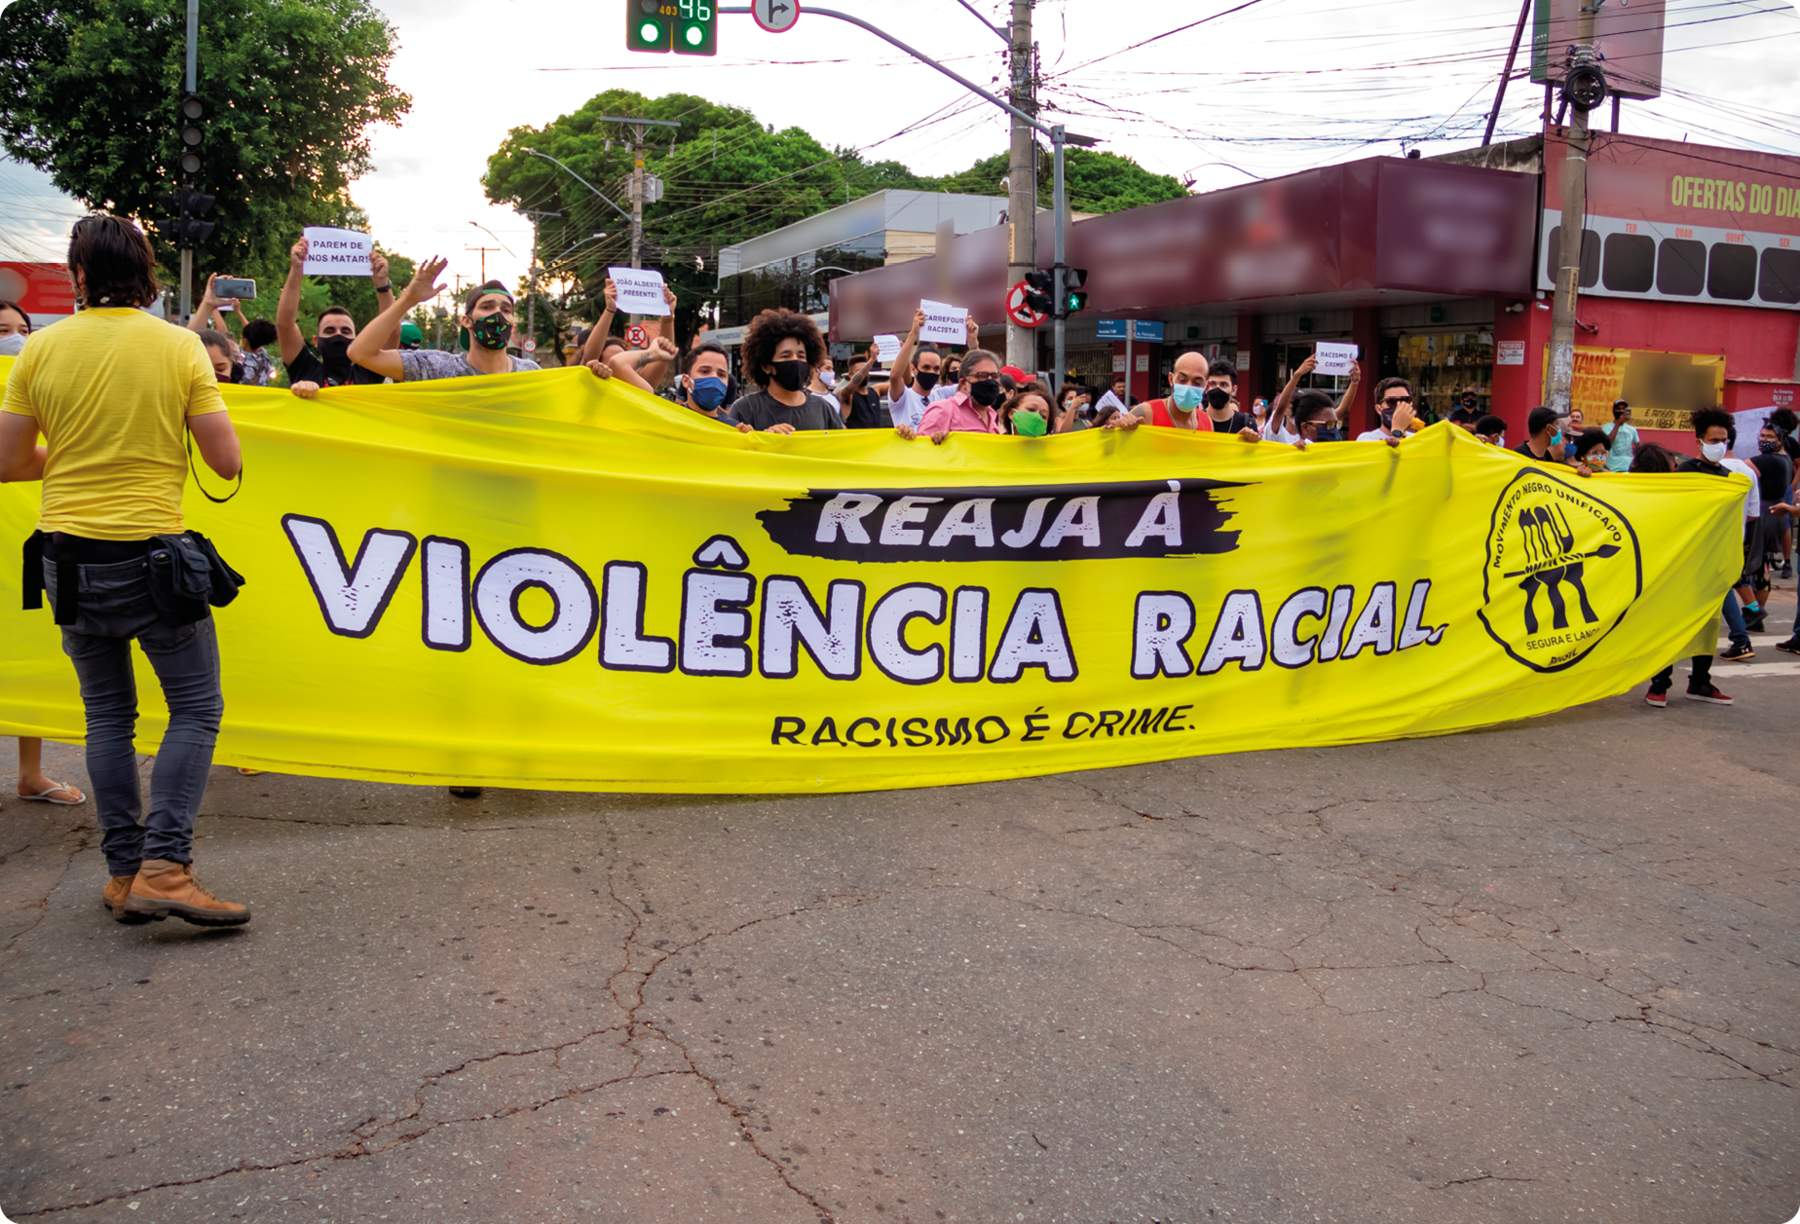 Fotografia. Pessoas em uma rua segurando uma faixa com o texto: REAJA À VIOLÊNCIA RACIAL. RACISMO É CRIME.